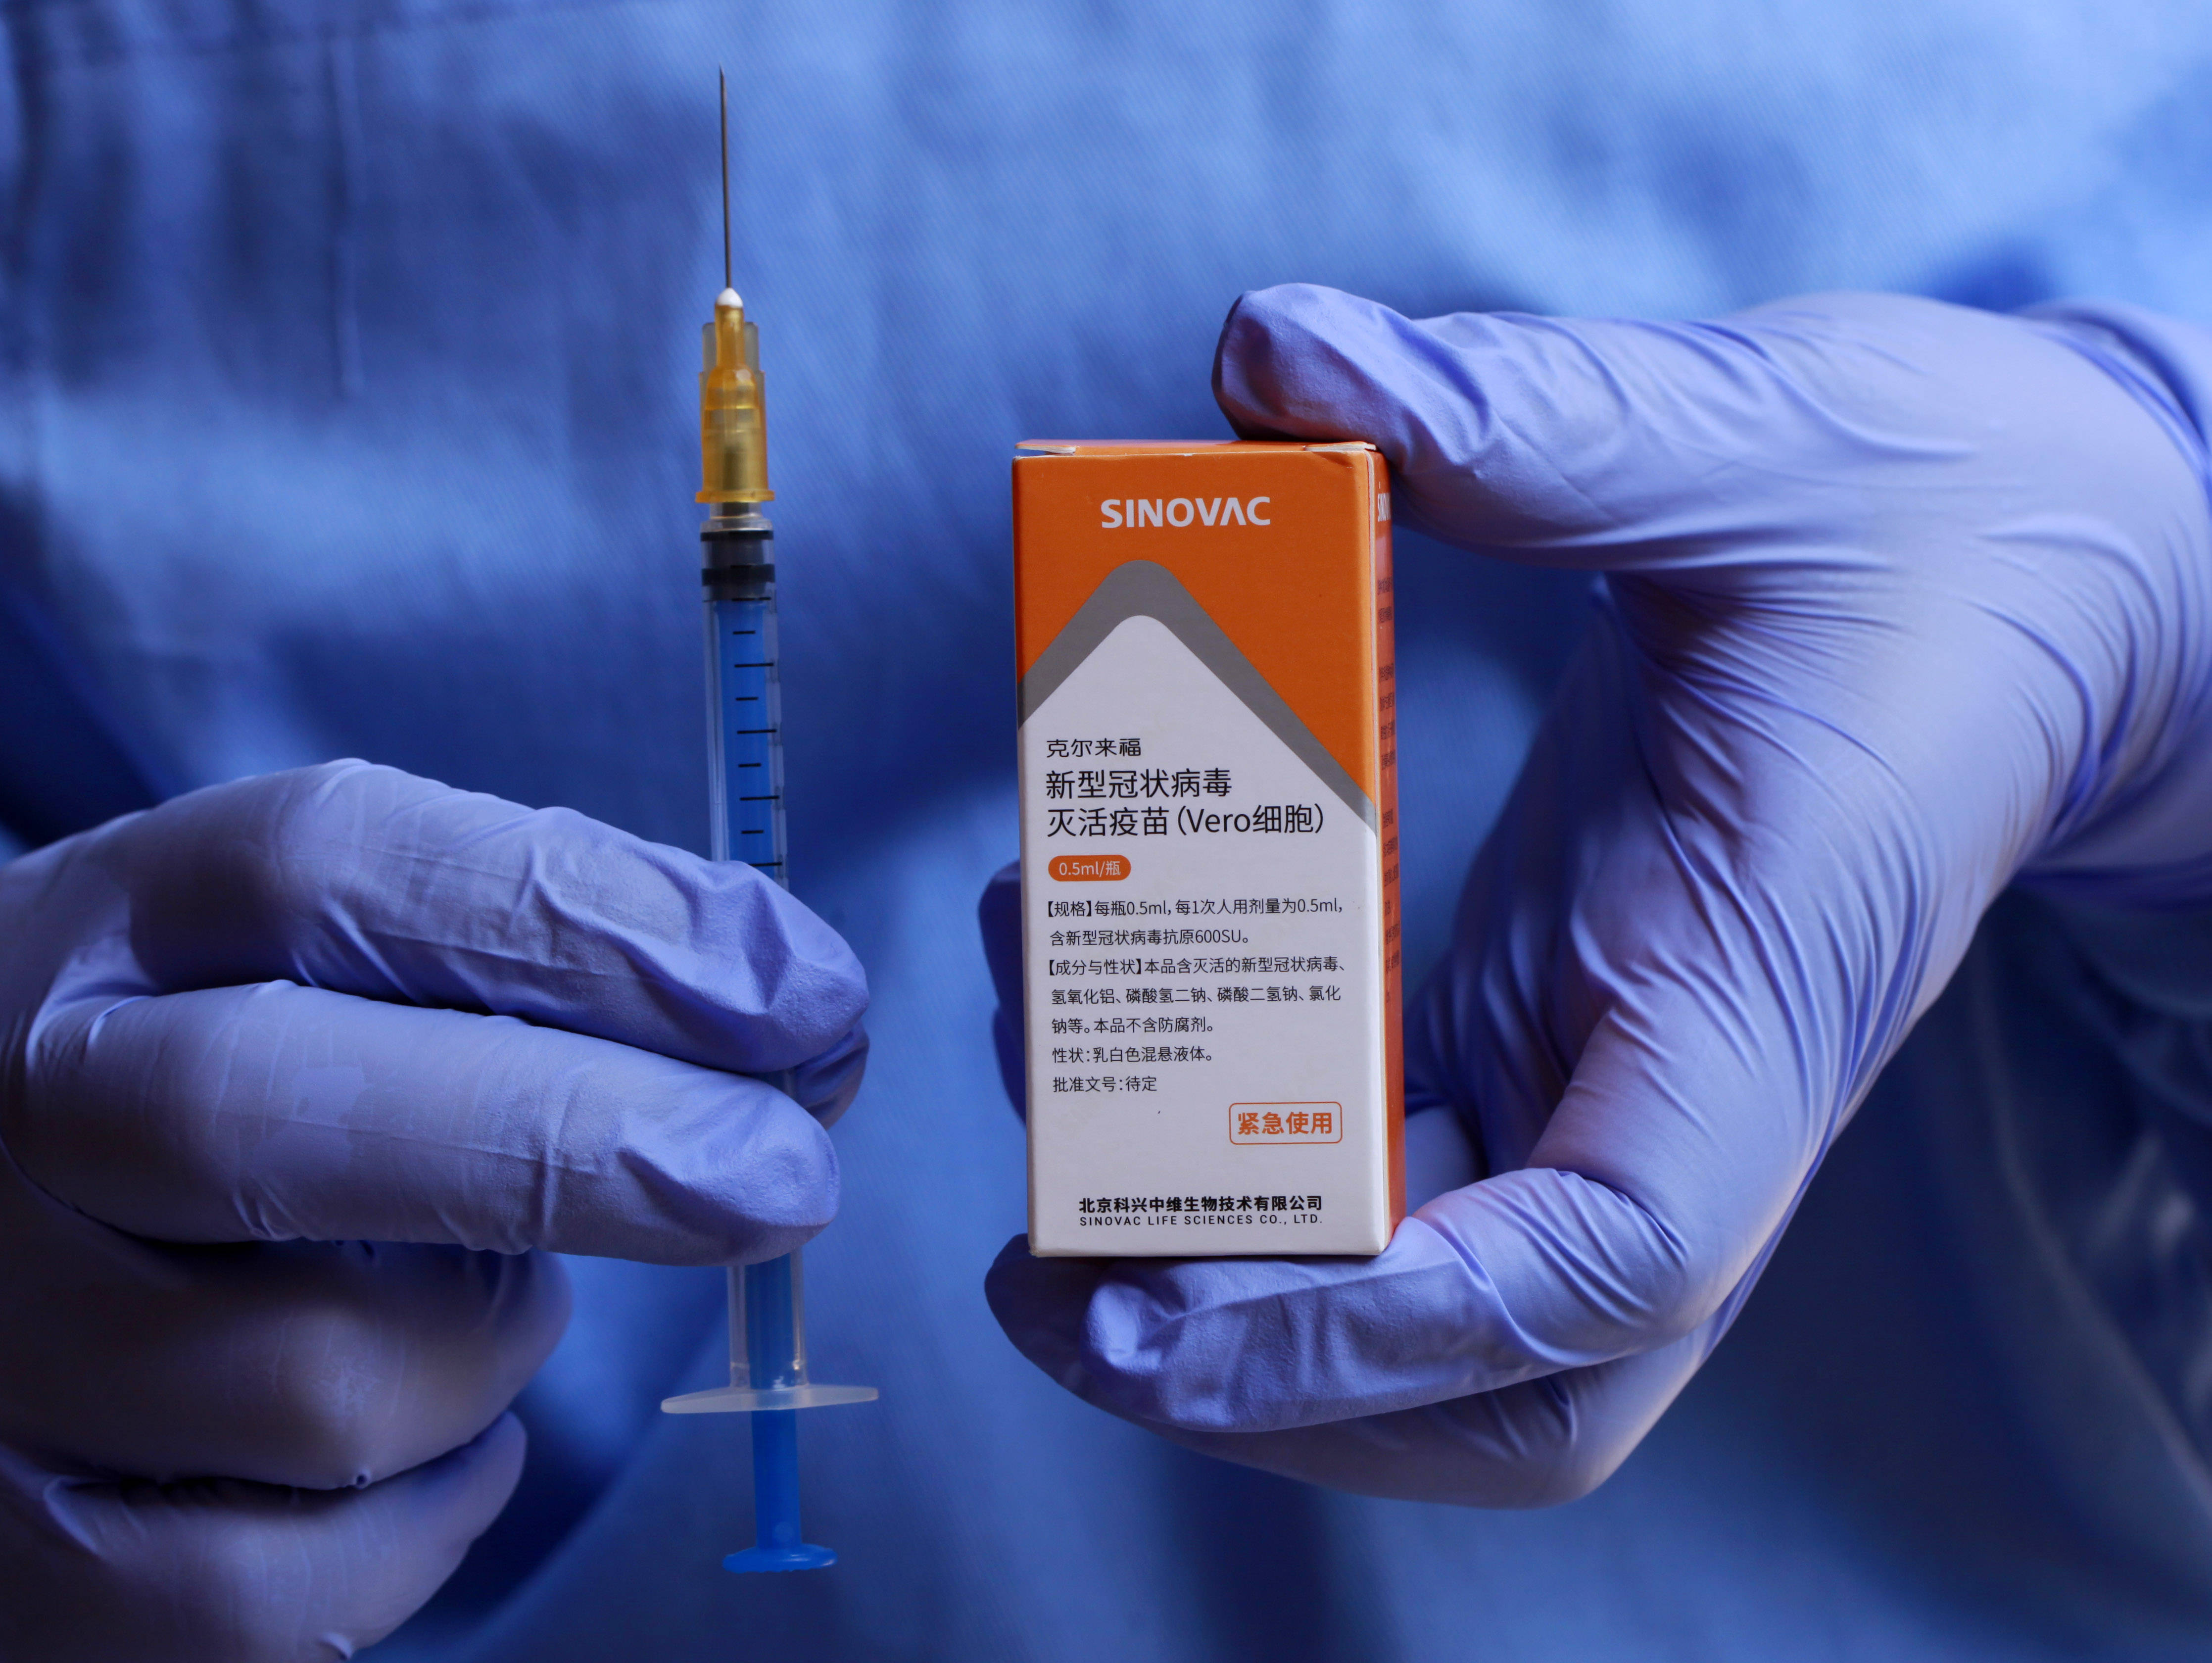 科兴疫苗是继国药疫苗之后,斯里兰卡批准紧急使用的第二款中国新冠